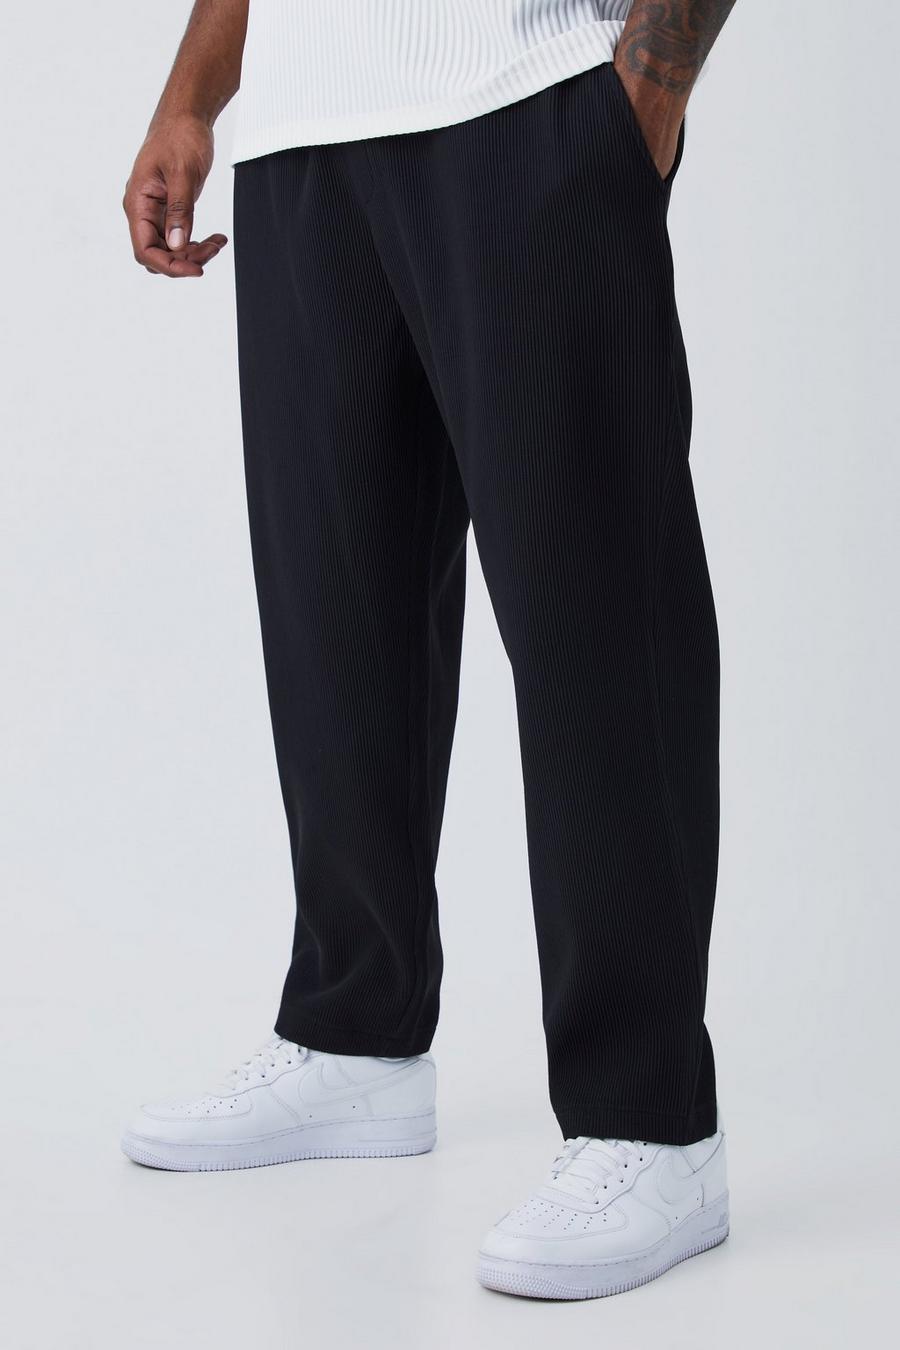 Grande taille - Pantalon fuselé plissé, Black